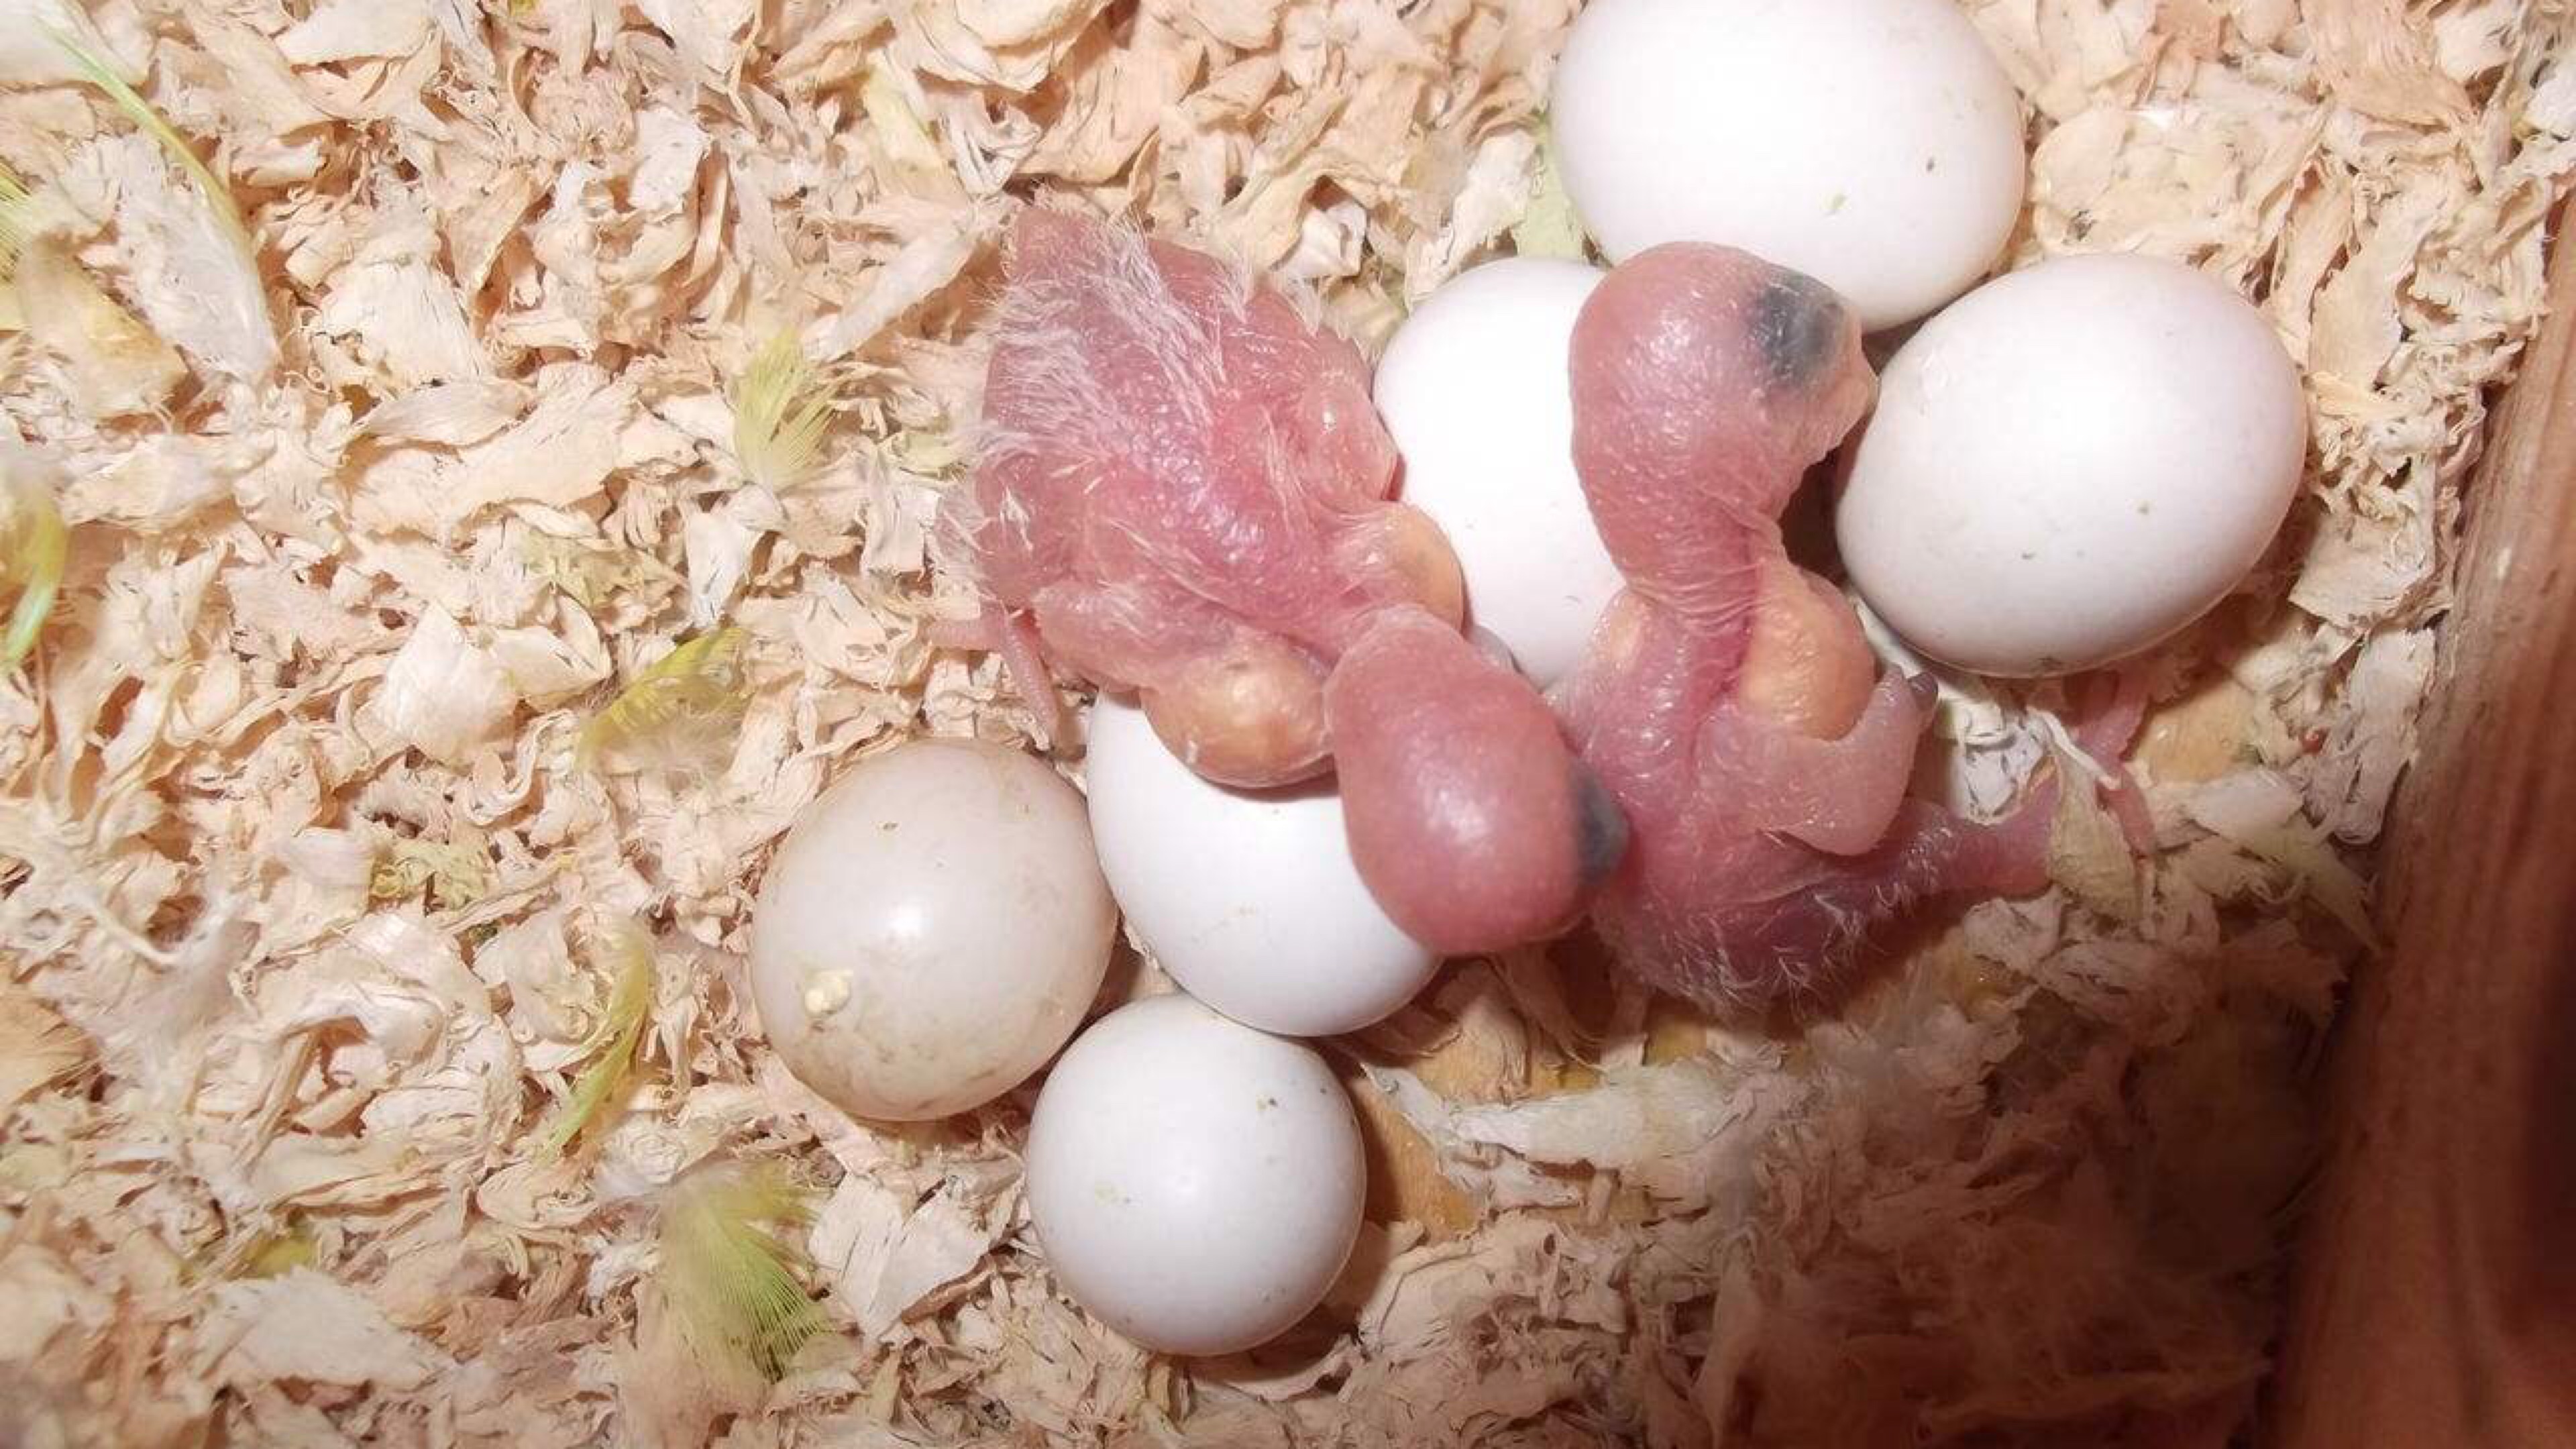 孵化20天鹦鹉蛋照蛋图-图库-五毛网